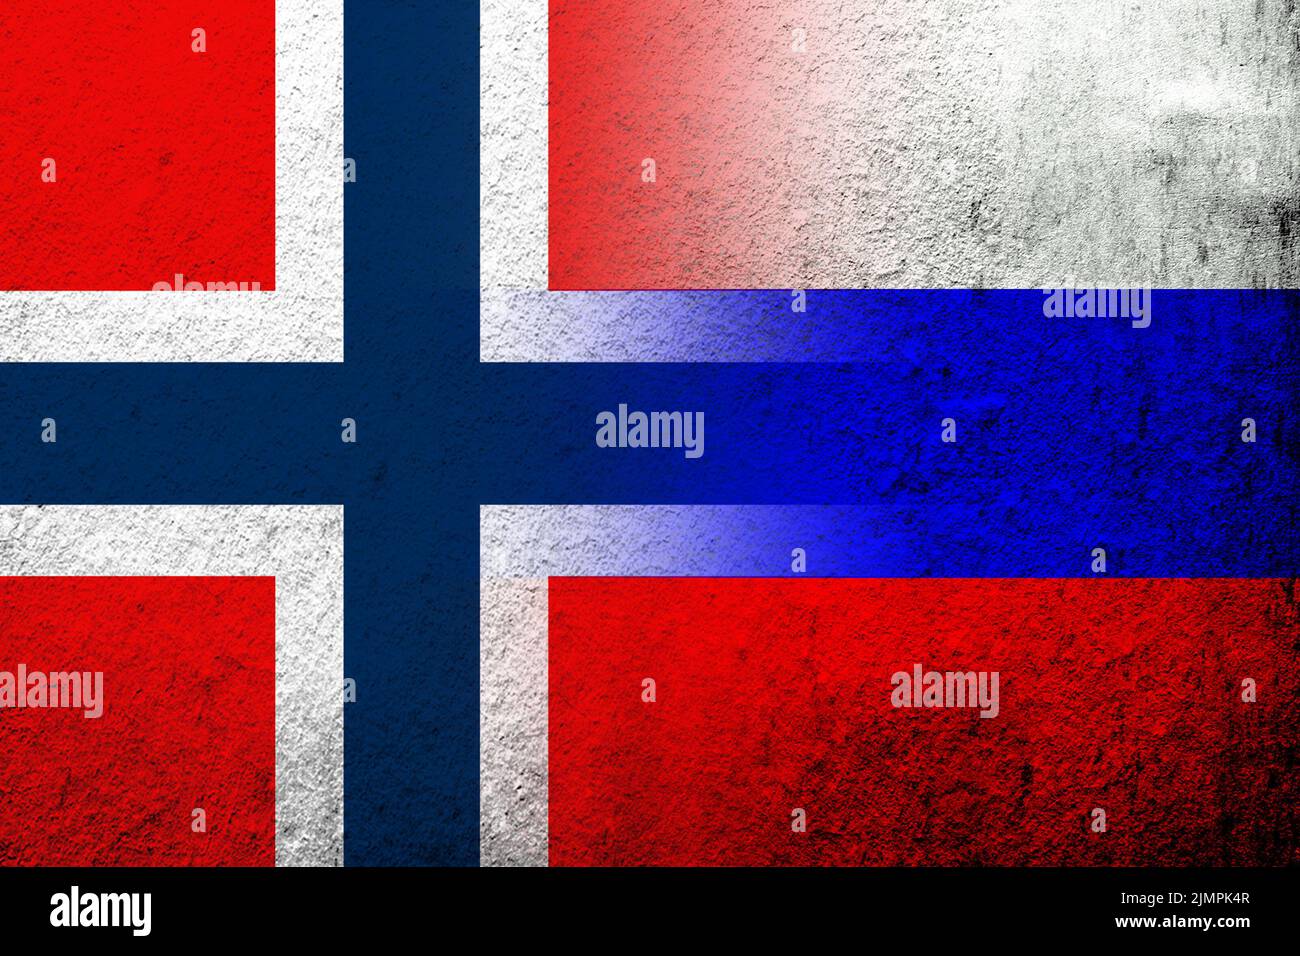 Drapeau national de la Fédération de Russie avec drapeau national du Royaume de Norvège. Grunge l'arrière-plan Banque D'Images